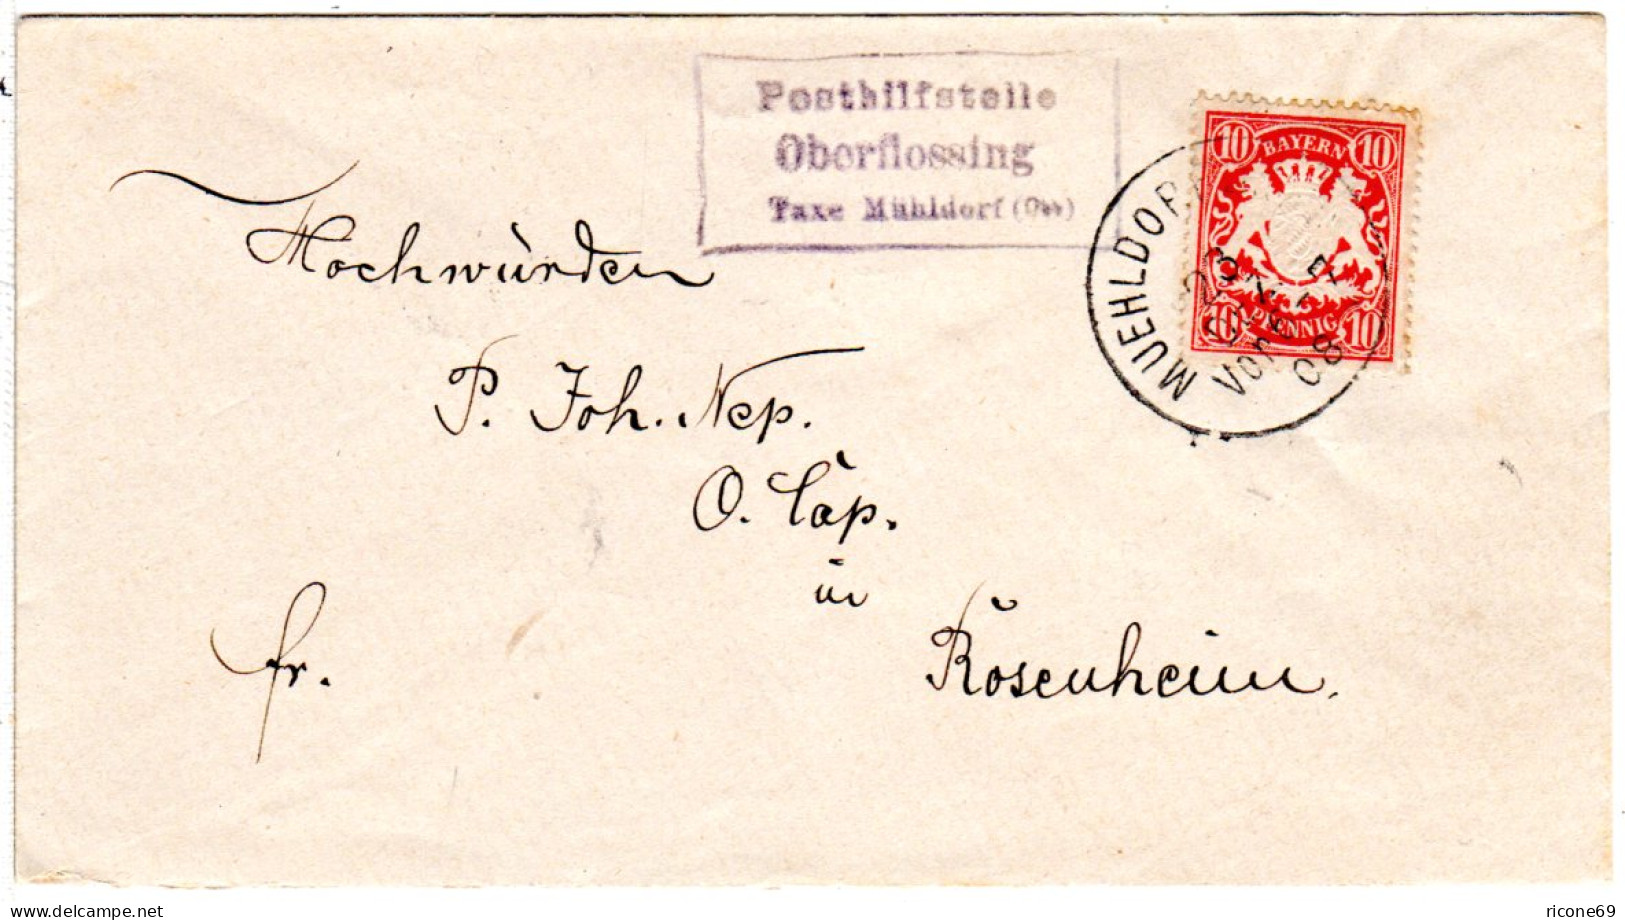 Bayern 1908, Posthilfstelle OBERFLOSSING Taxe Mühldorf Auf Brief M. 10 Pf. - Briefe U. Dokumente